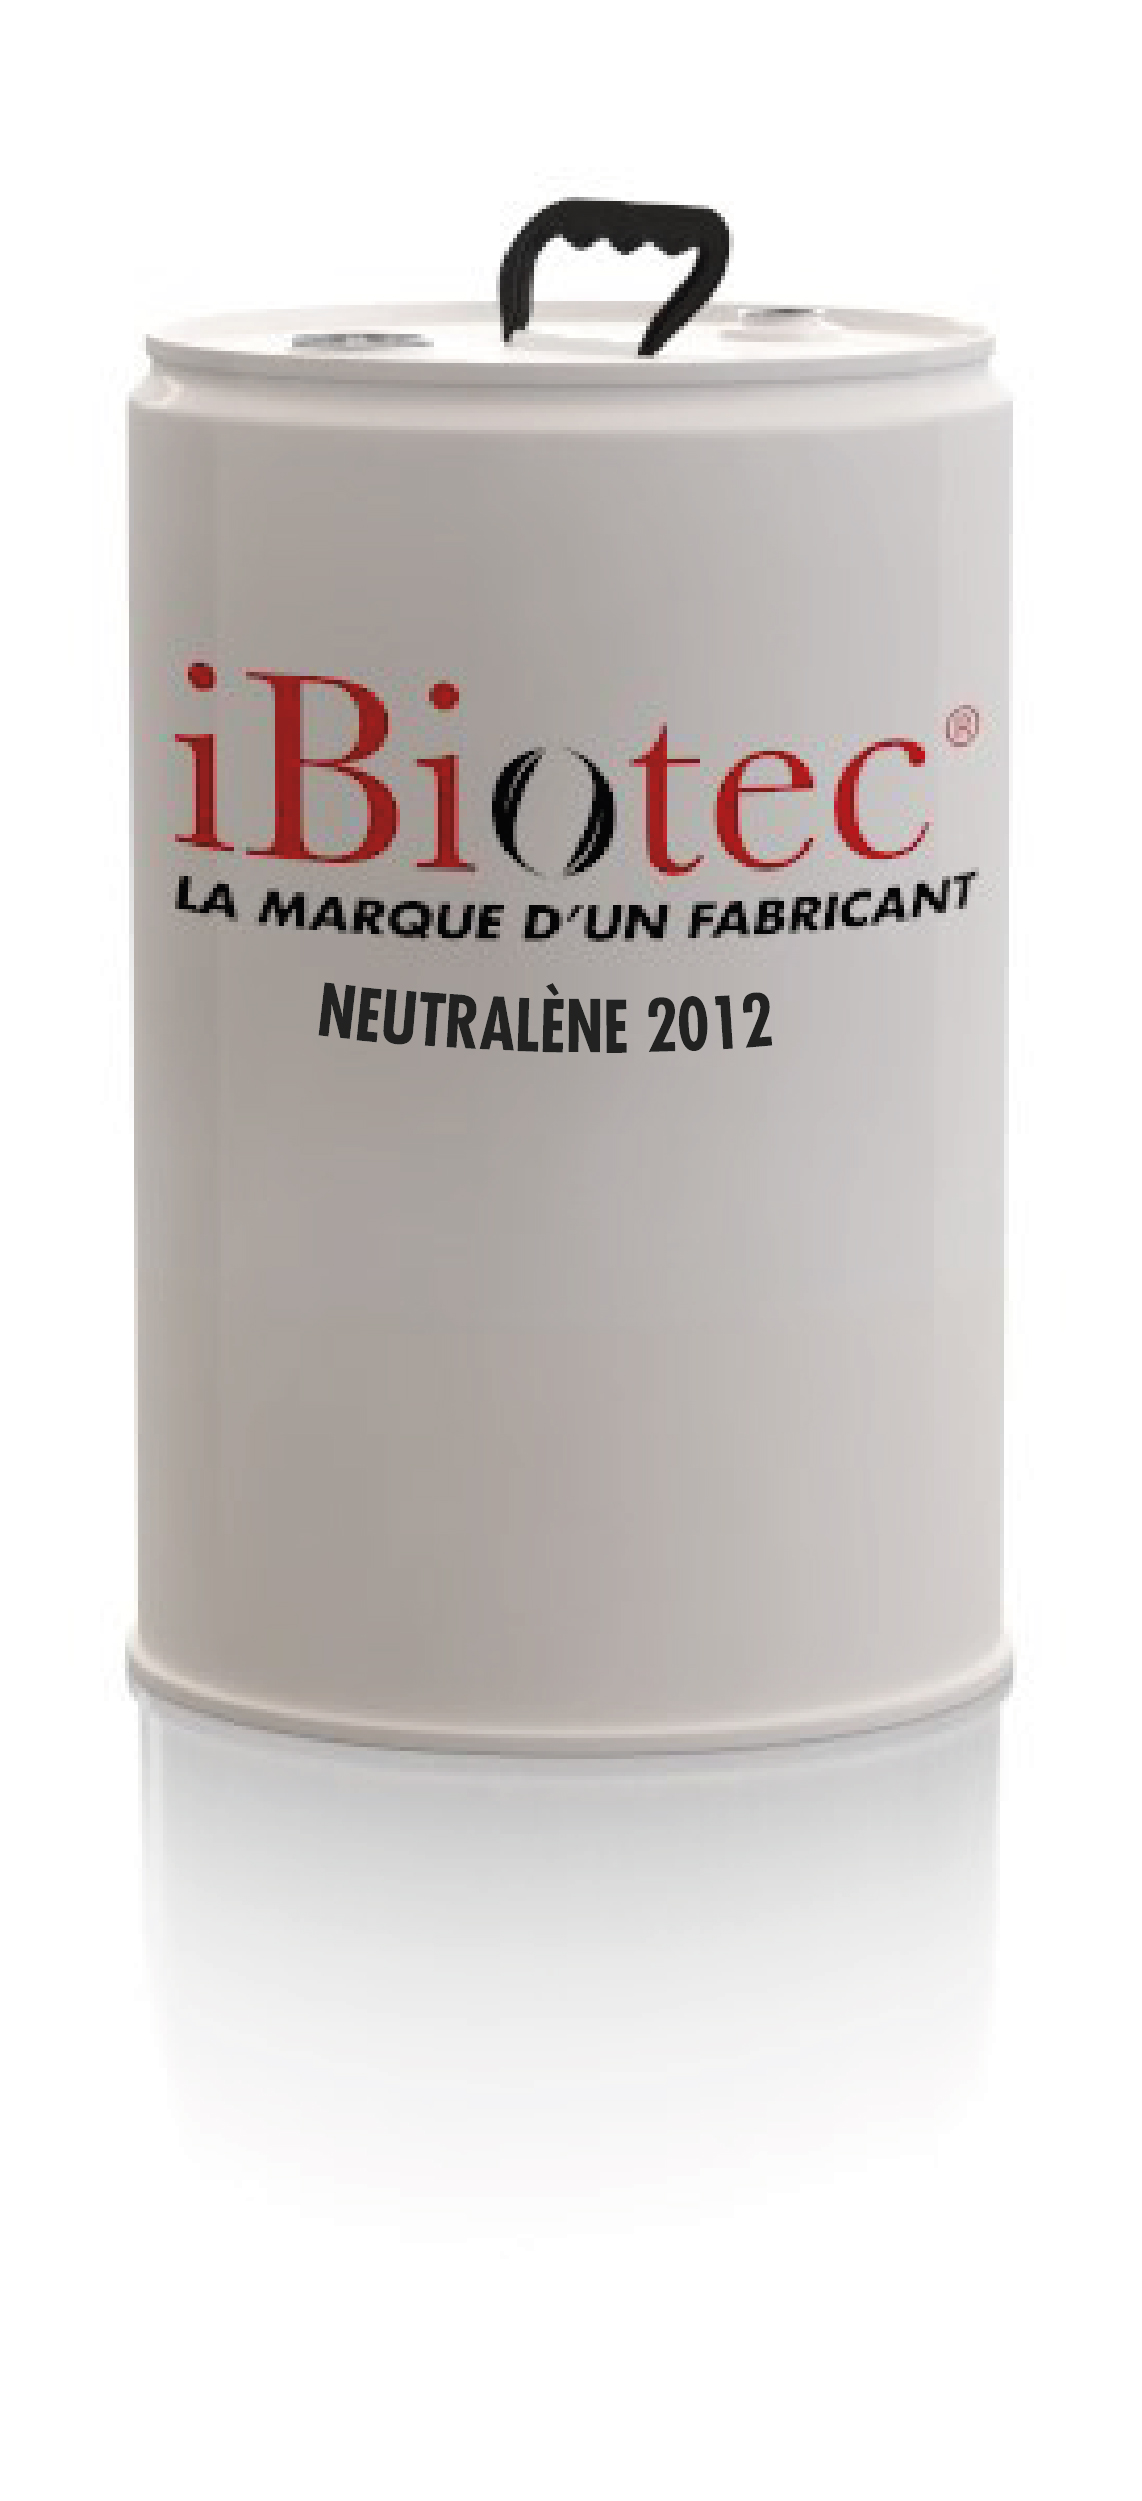 Ipari zsírtalanítók - Neutralène 2012 - Ibiotec - Tec Industries